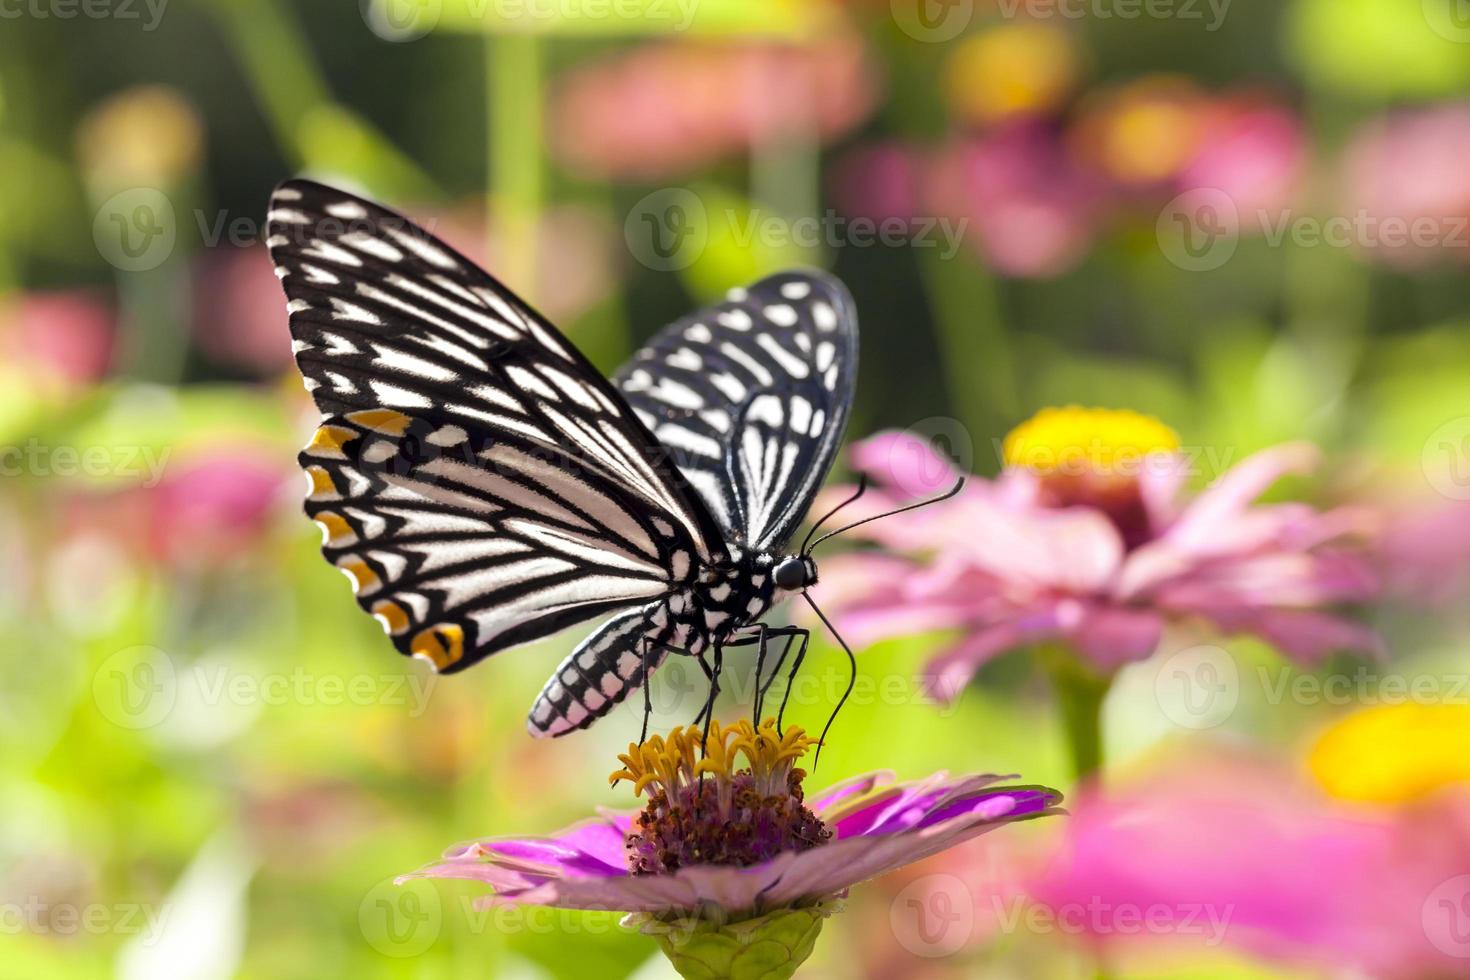 borboleta em flor foto